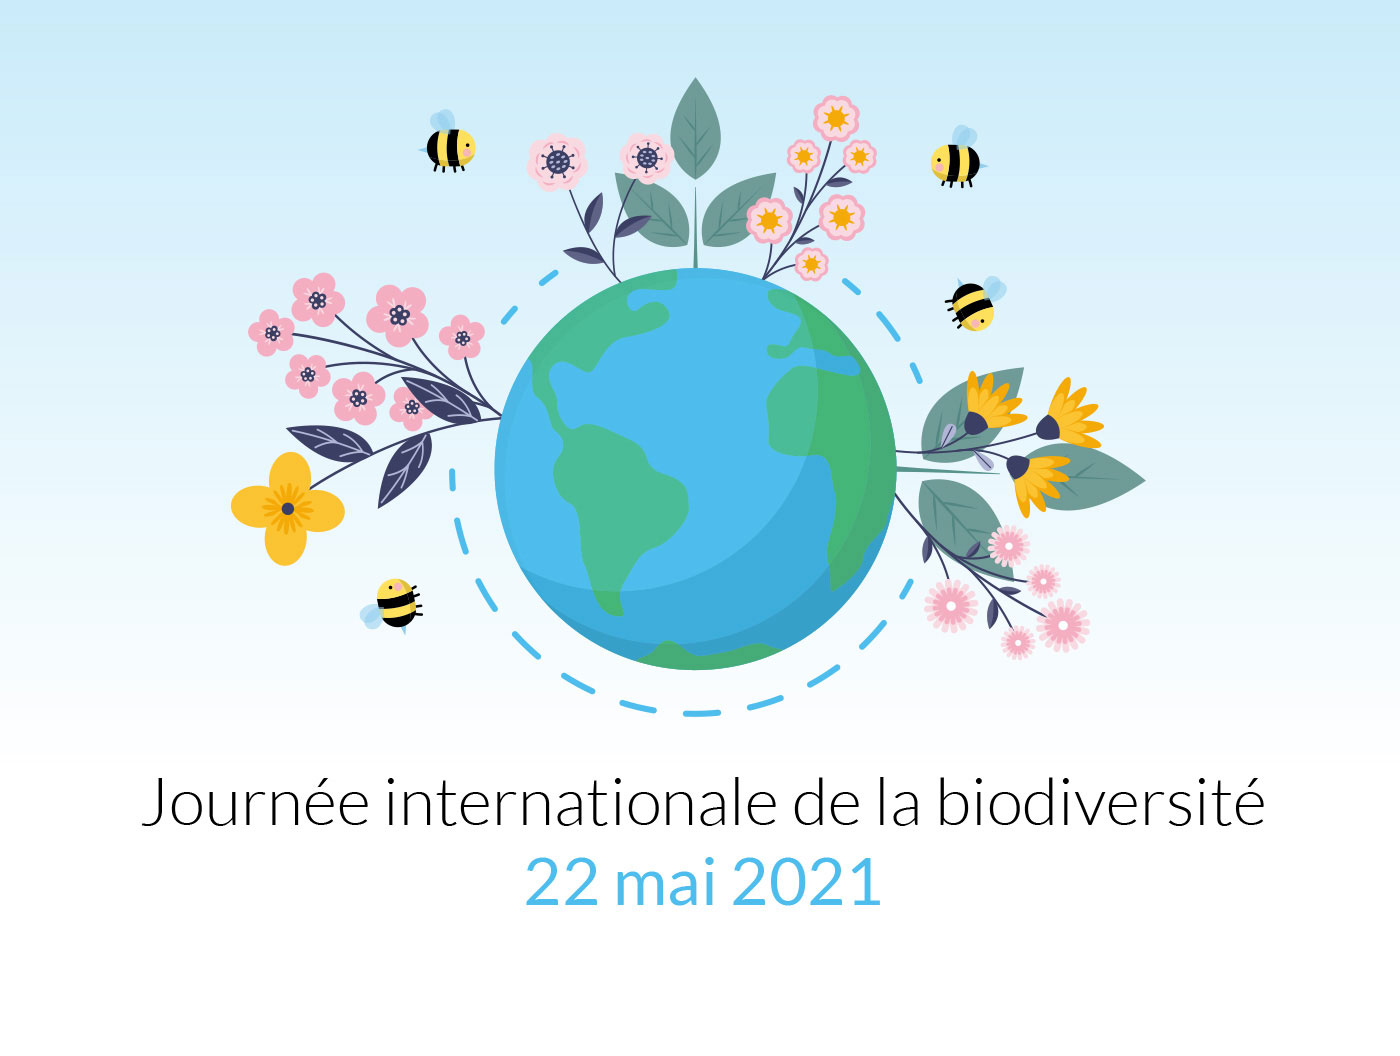 Journée de la biodiversité